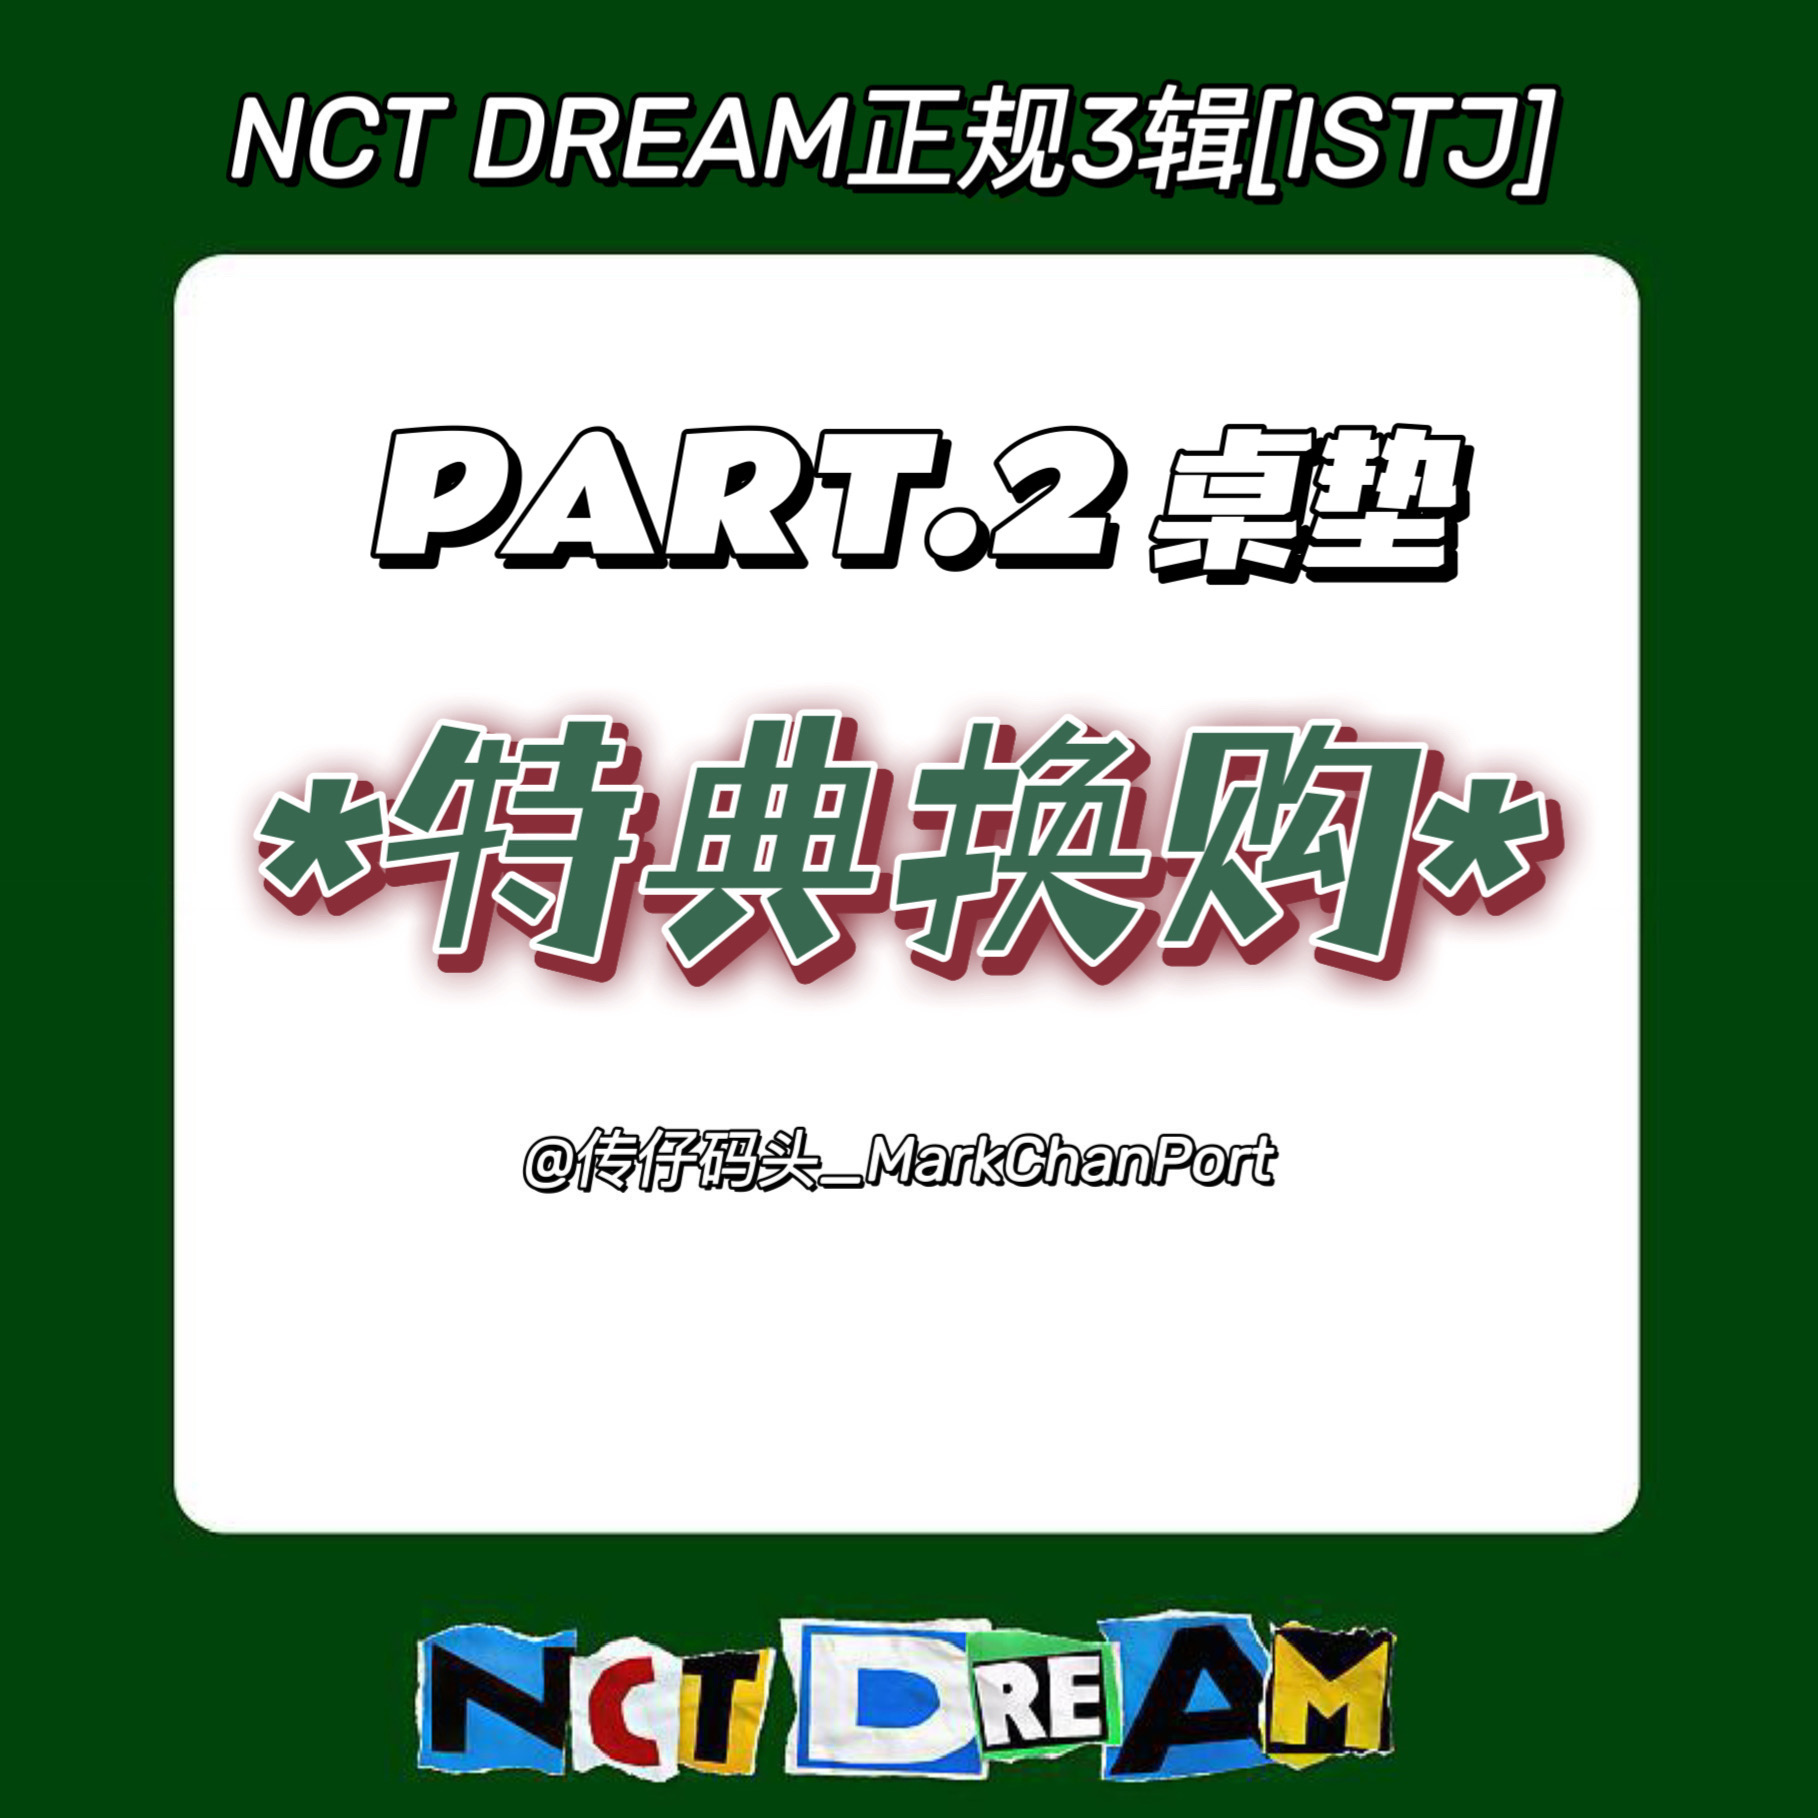 [全款 桌垫特典 特典专] NCT DREAM - 正规3辑 [ISTJ] _马东吧_MarkChanBar